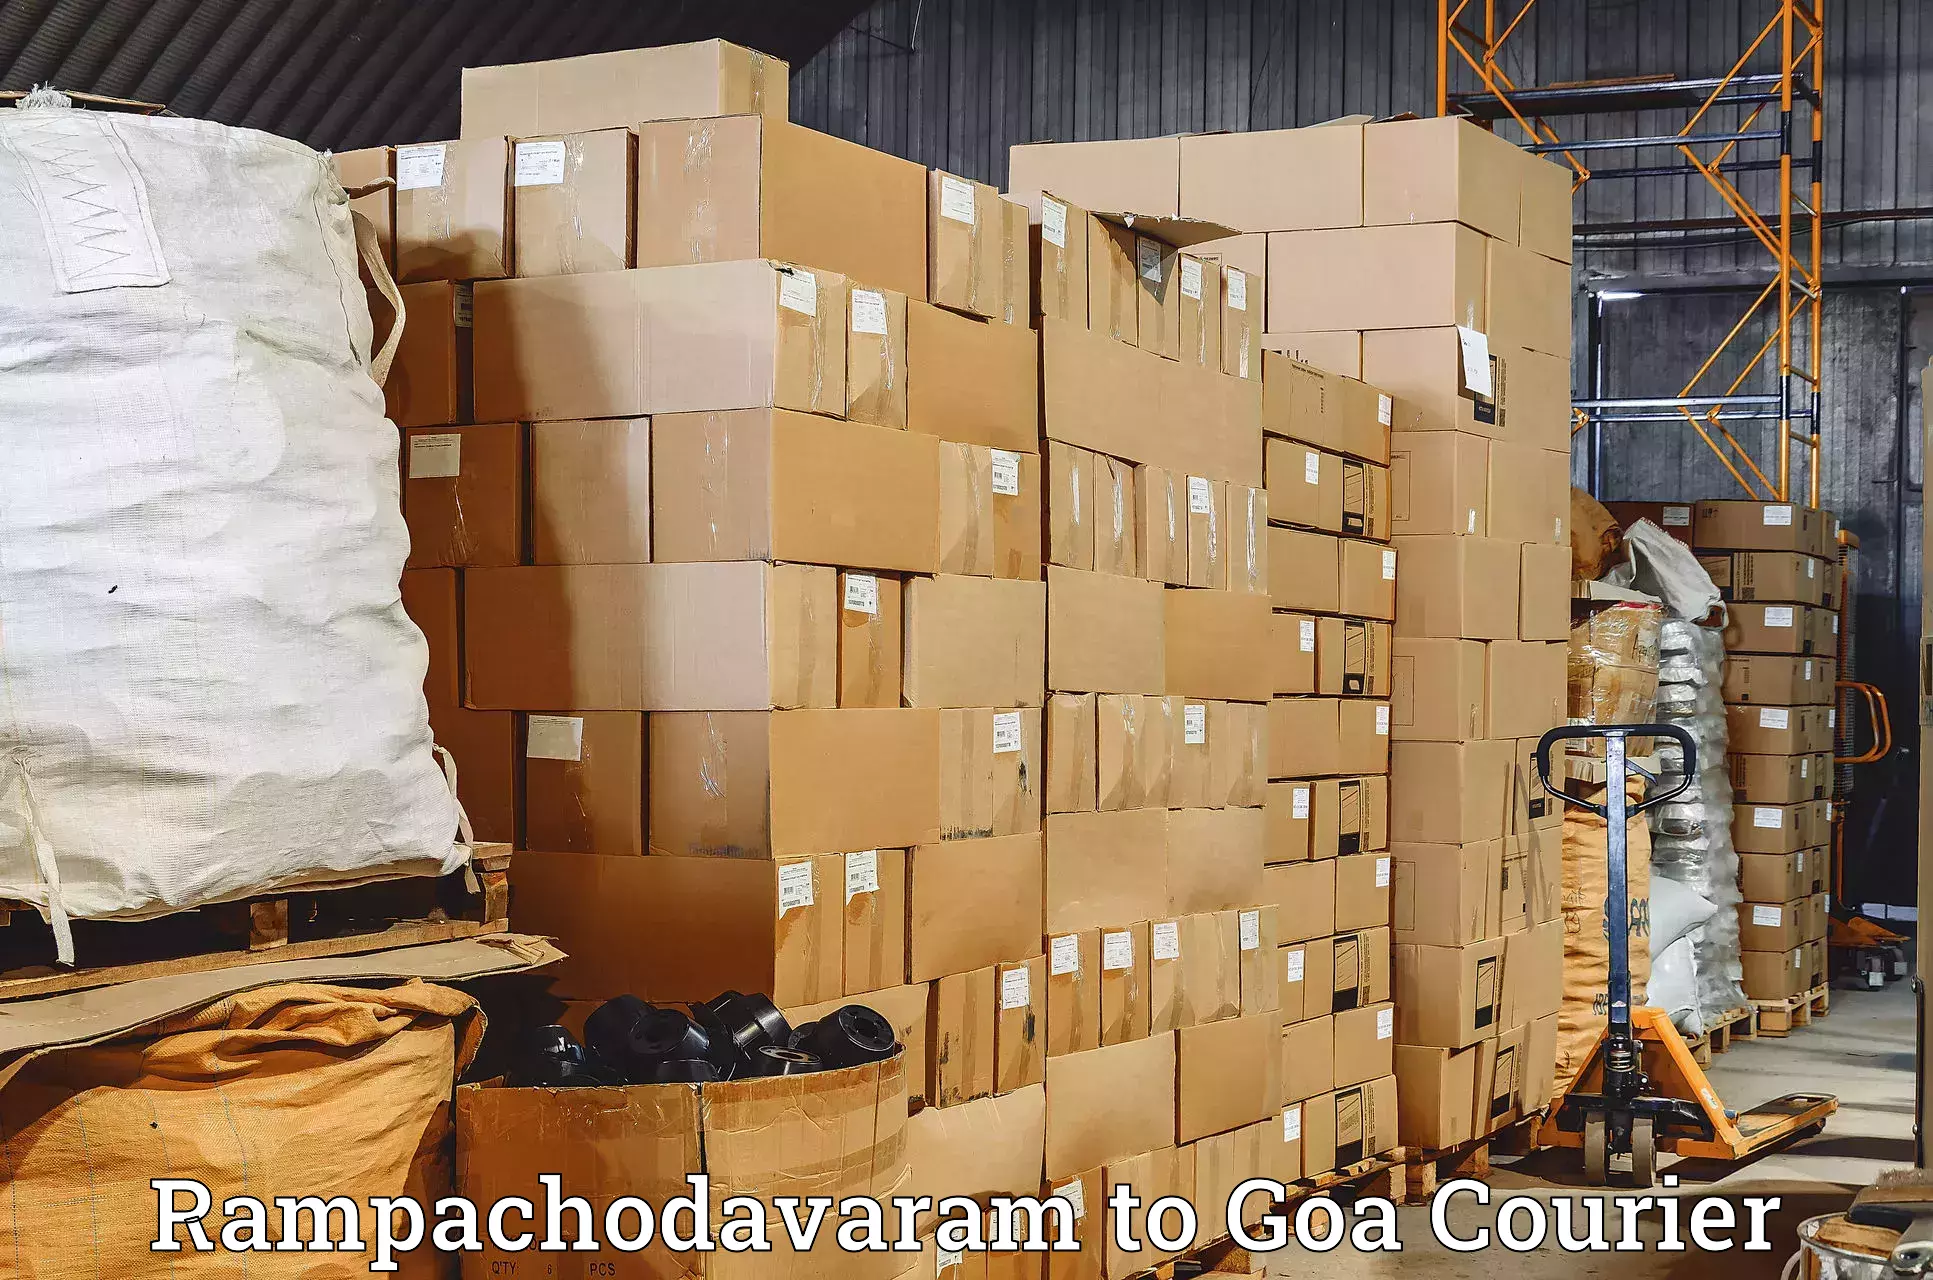 Courier service comparison in Rampachodavaram to Goa University